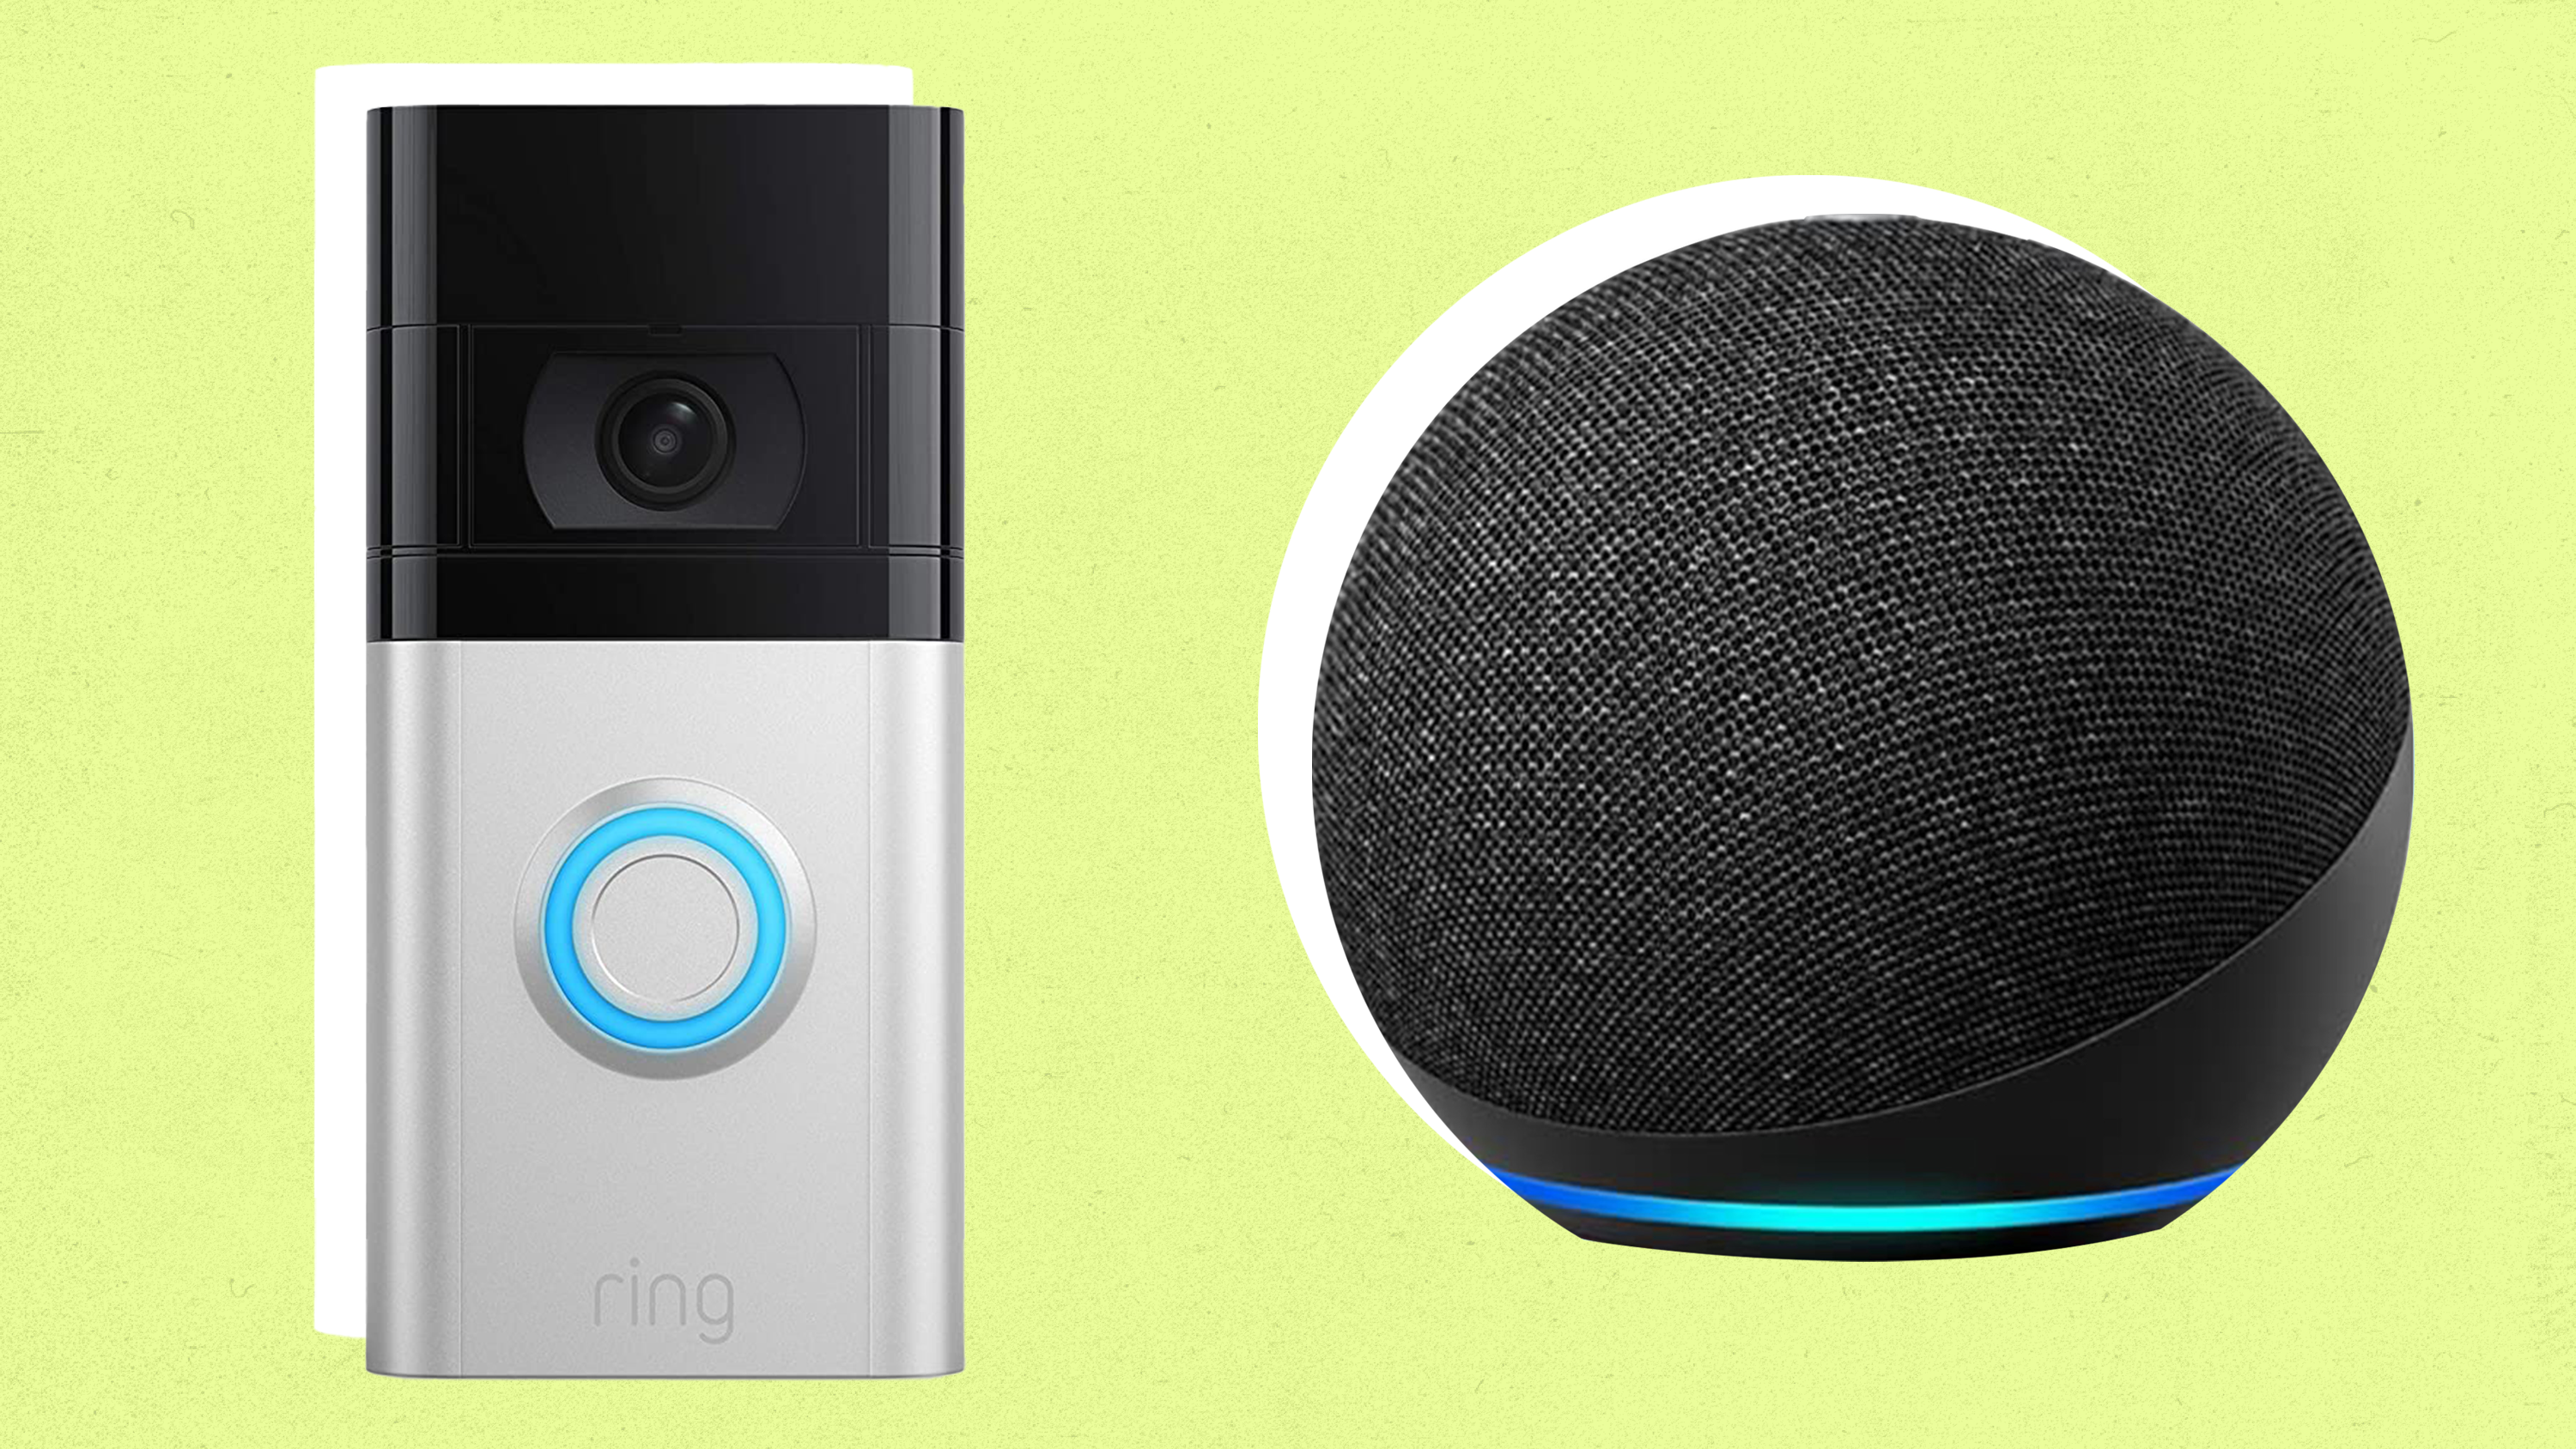 Batas video cincin yang digambarkan di sebelah speaker pintar Amazon Echo